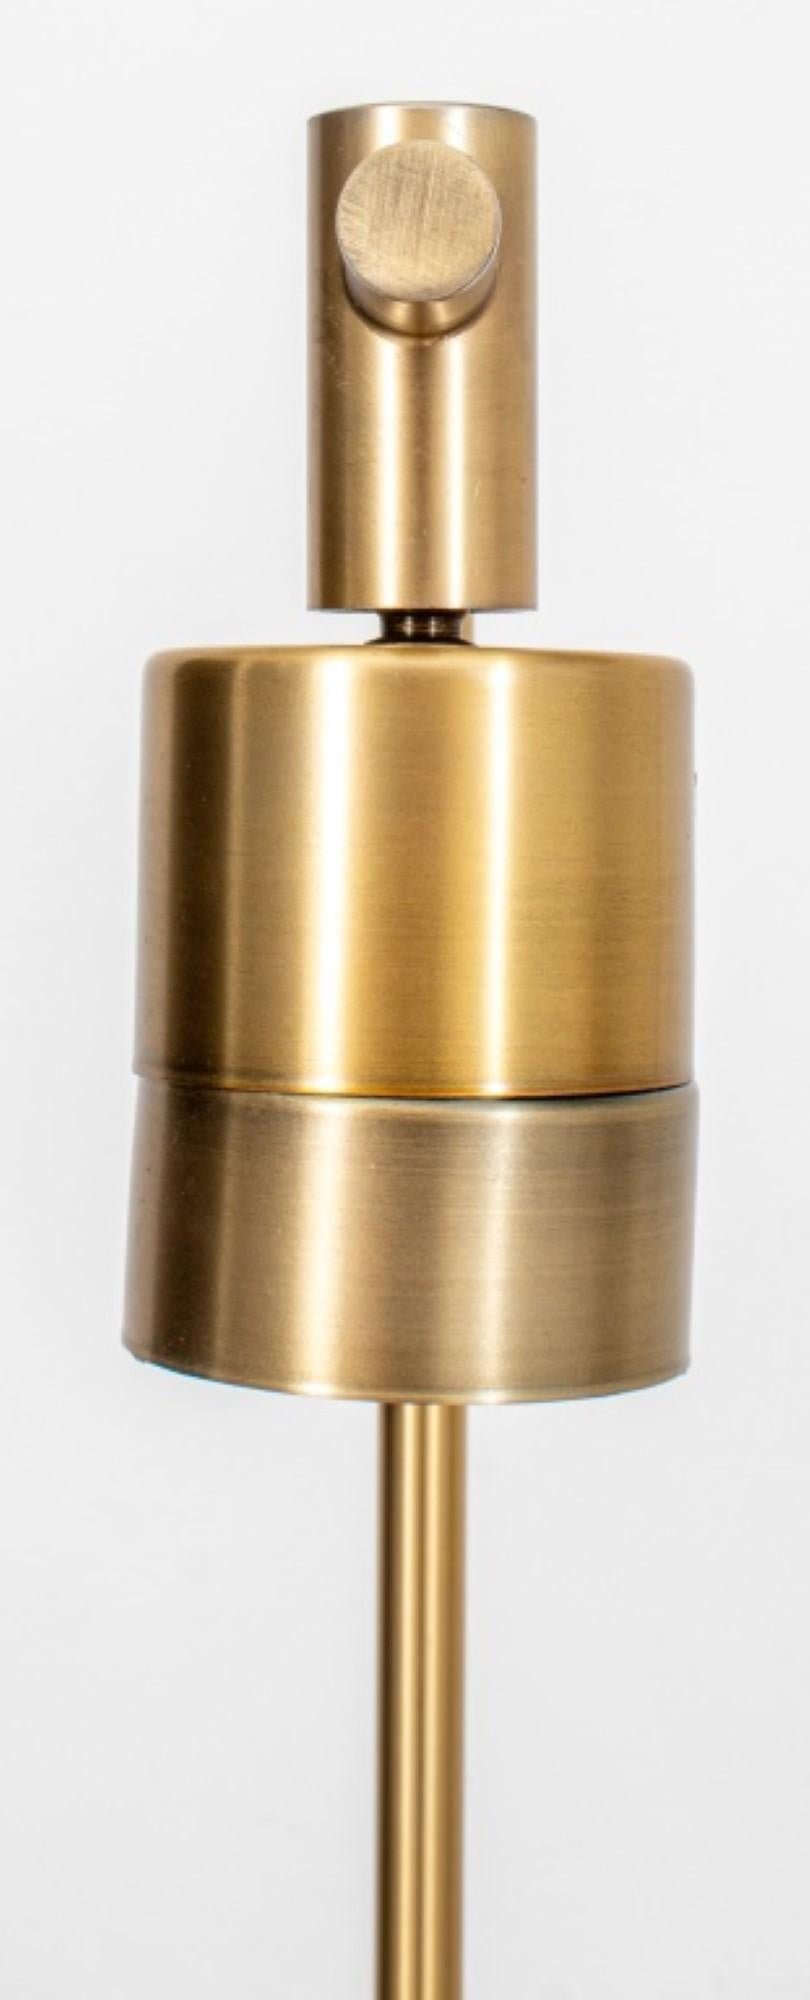 Die Abmessungen für die Intertek Modernist Brass Standing Floor Lamp sind ungefähr:

Höhe: 54,75 Zoll
Breite: 14,25 Zoll
Tiefe: 11 Zoll